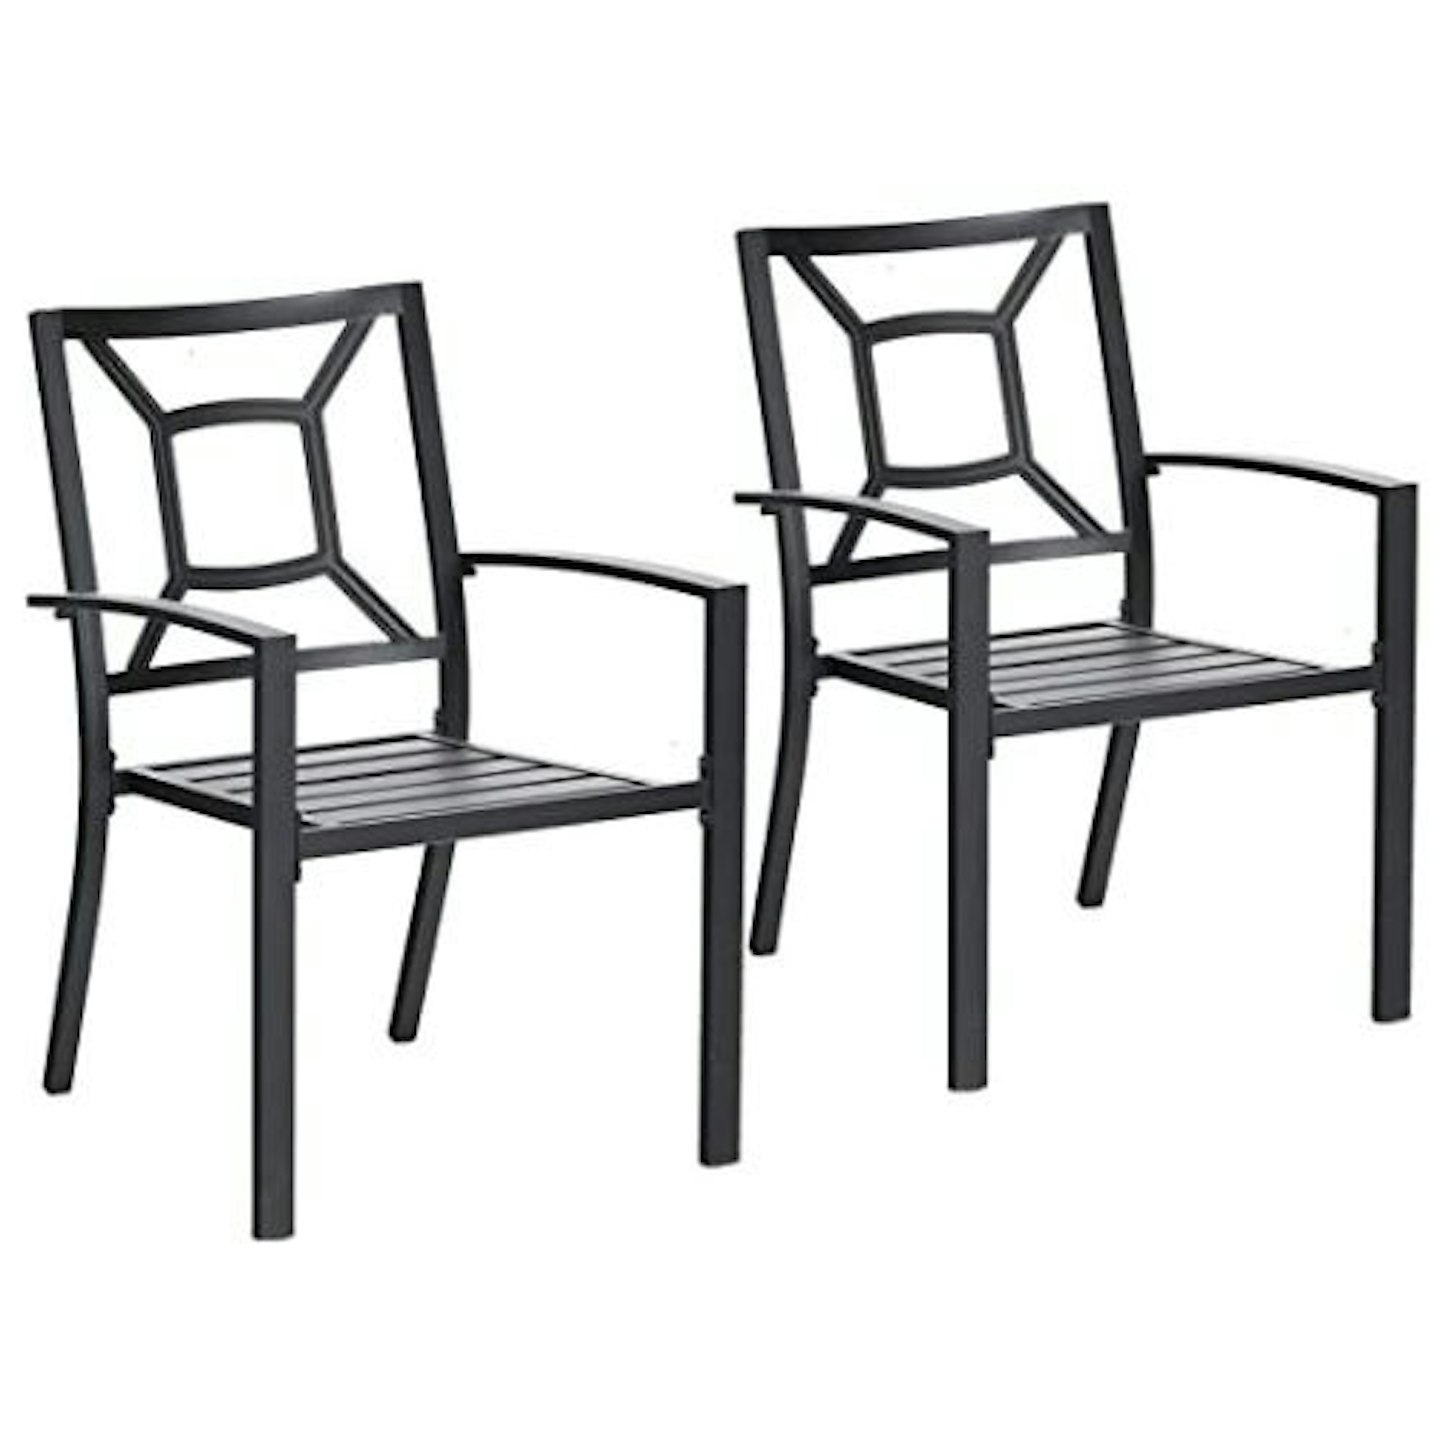 PHIVILLA Metal Garden Chairs